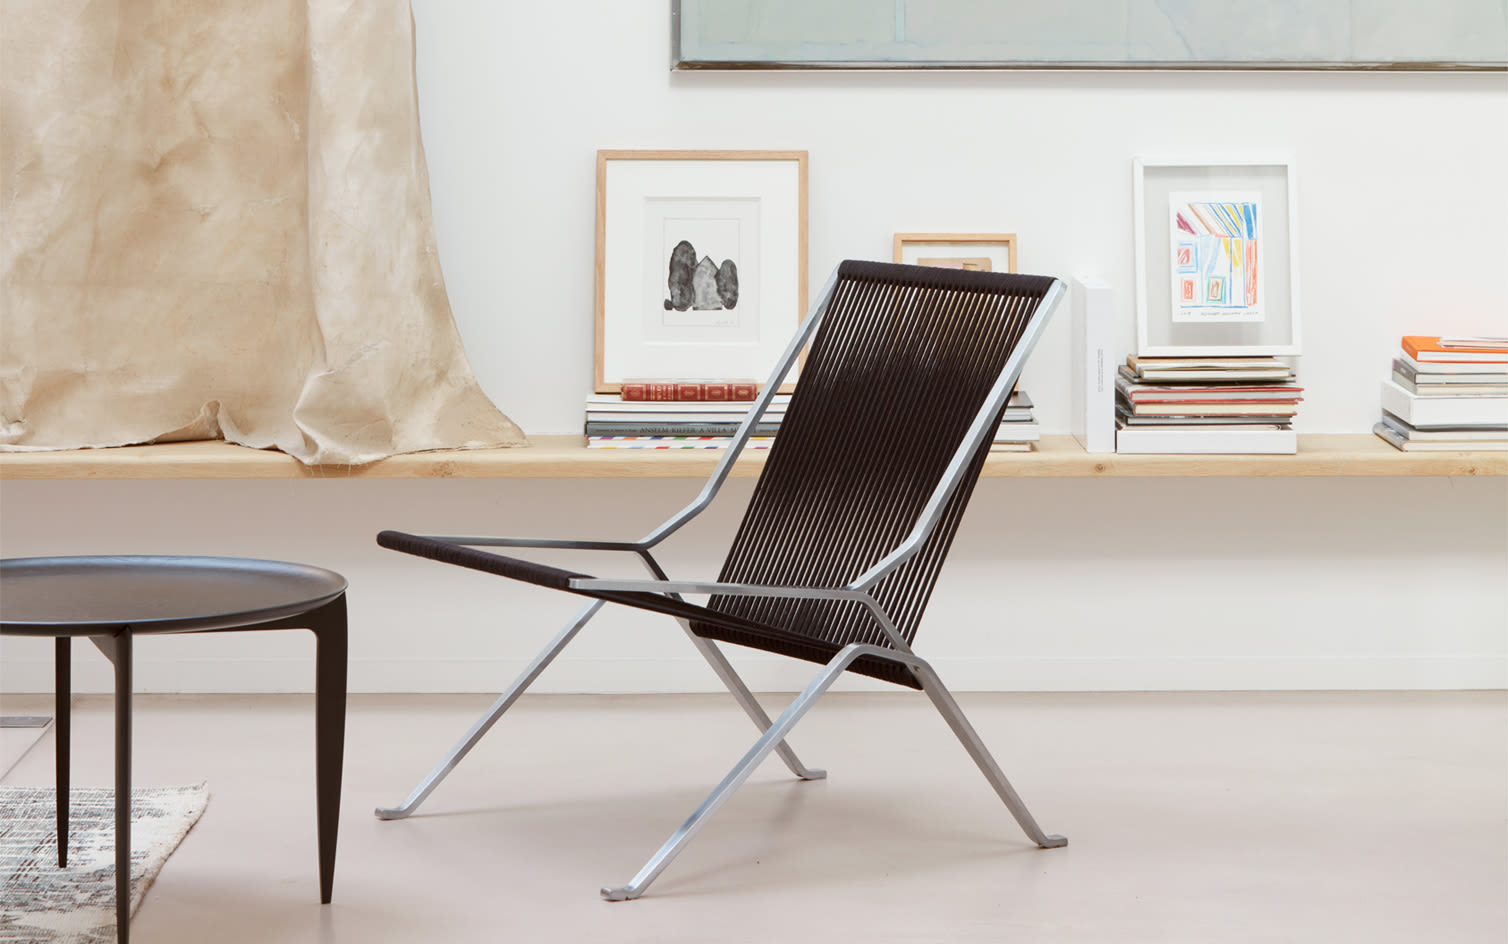 Editorial Splash 11 | Ikoniska stolar från Fritz Hansen – dansk design i sitt esse